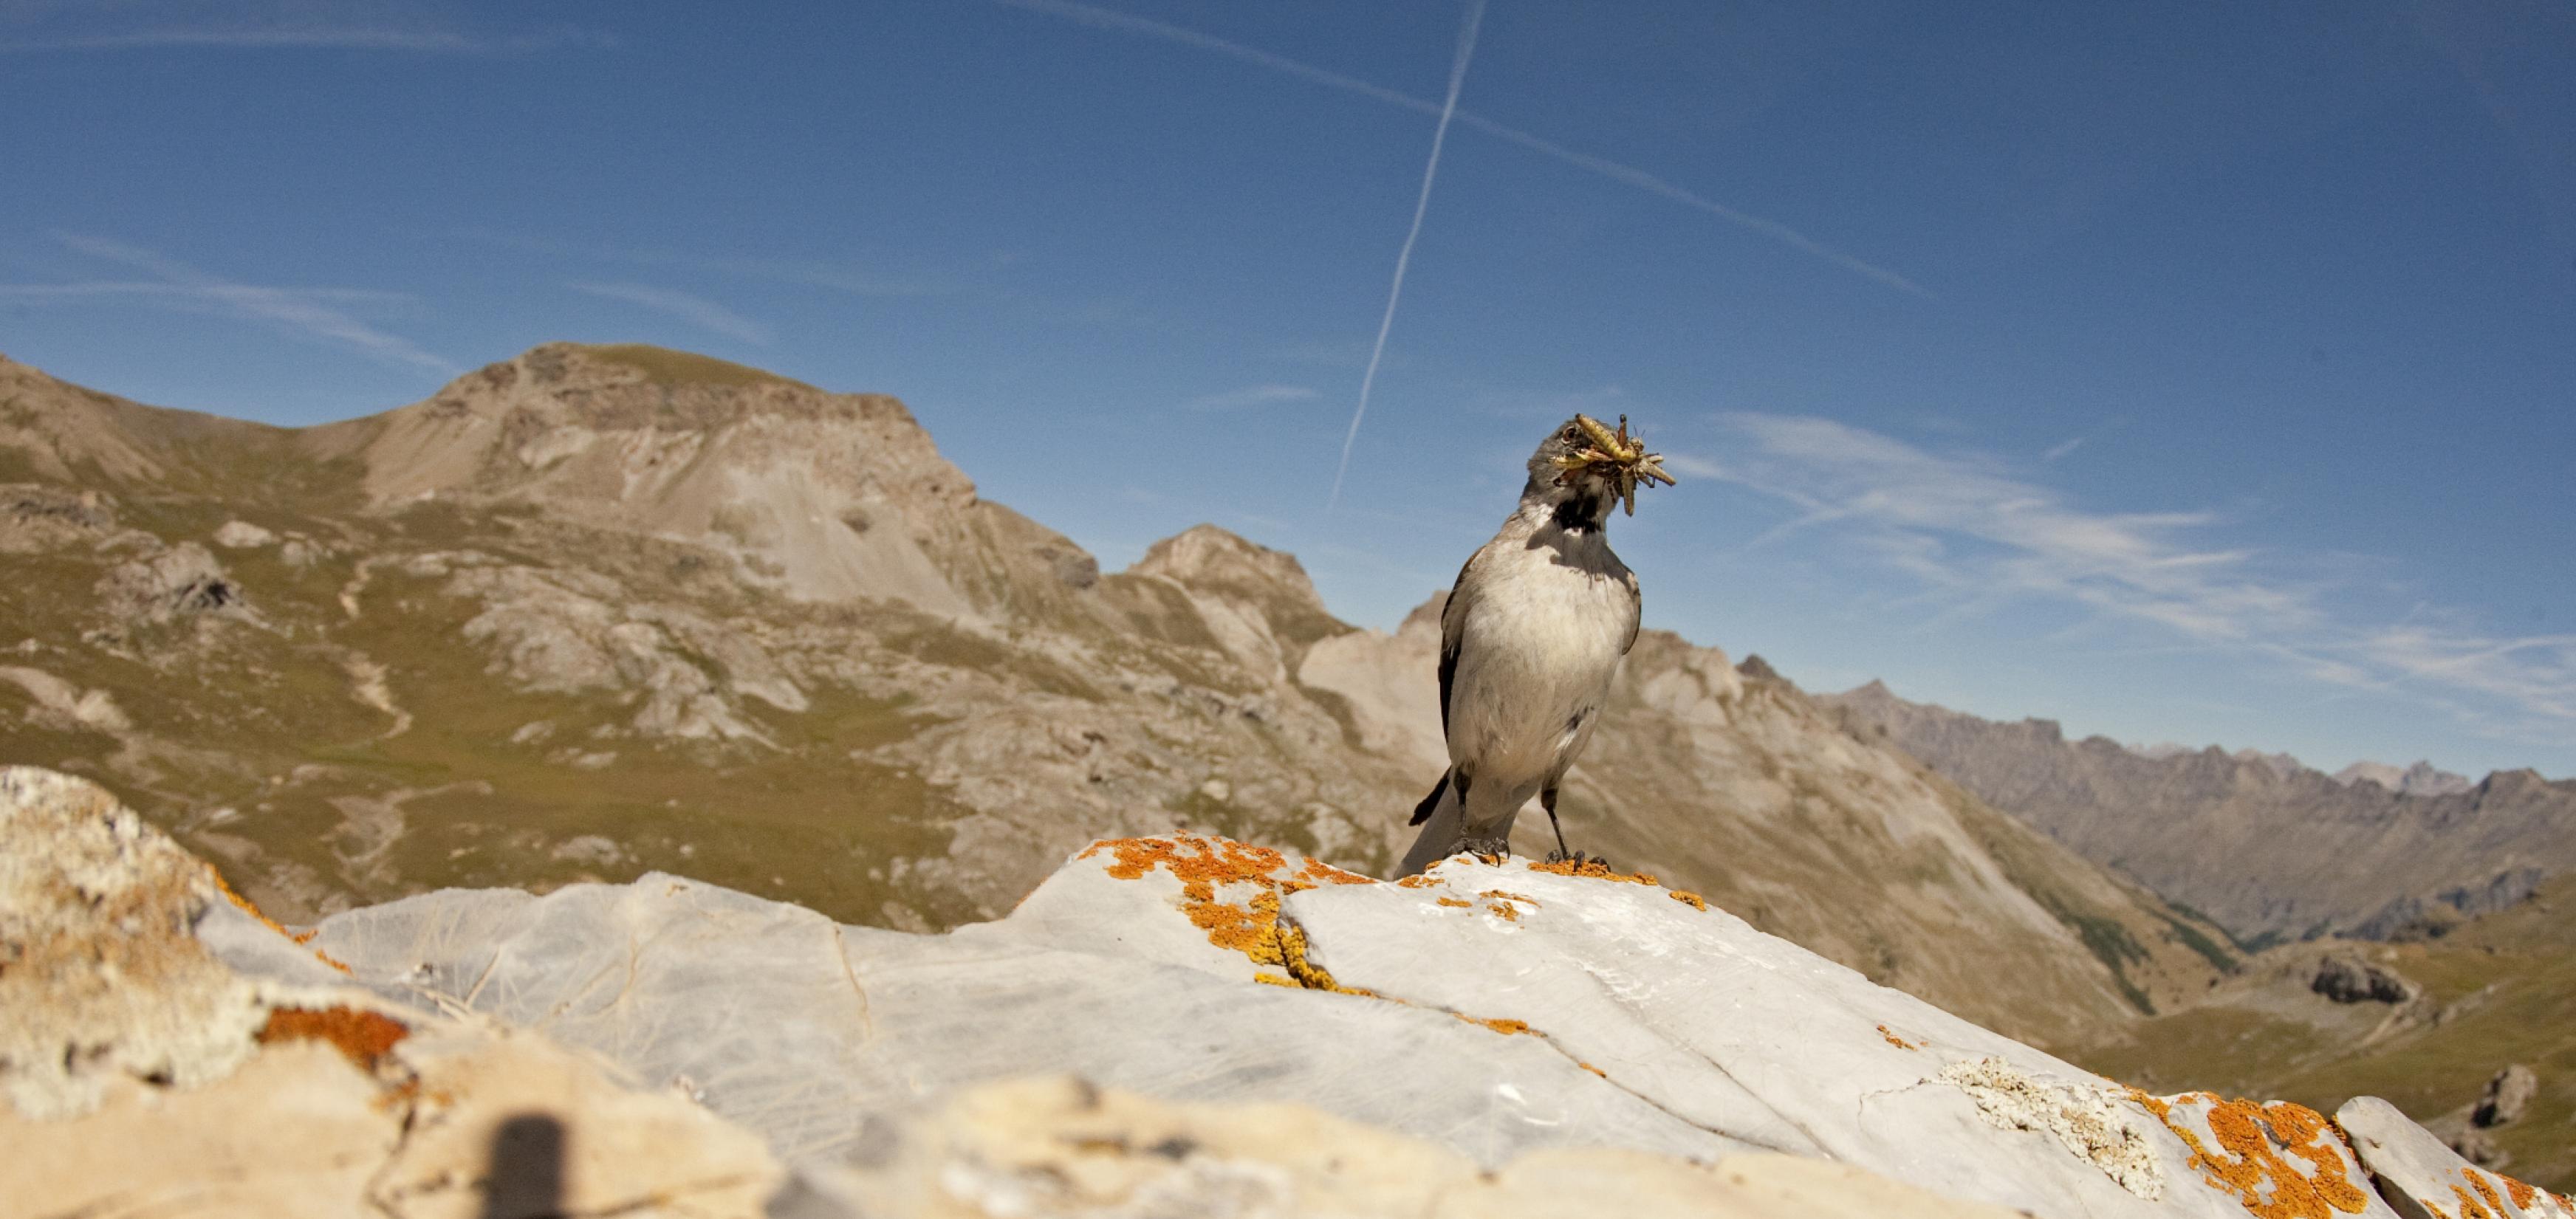 Spatzengroßer Vogel mit Insekten im Schnabel vor Bergkulisse.